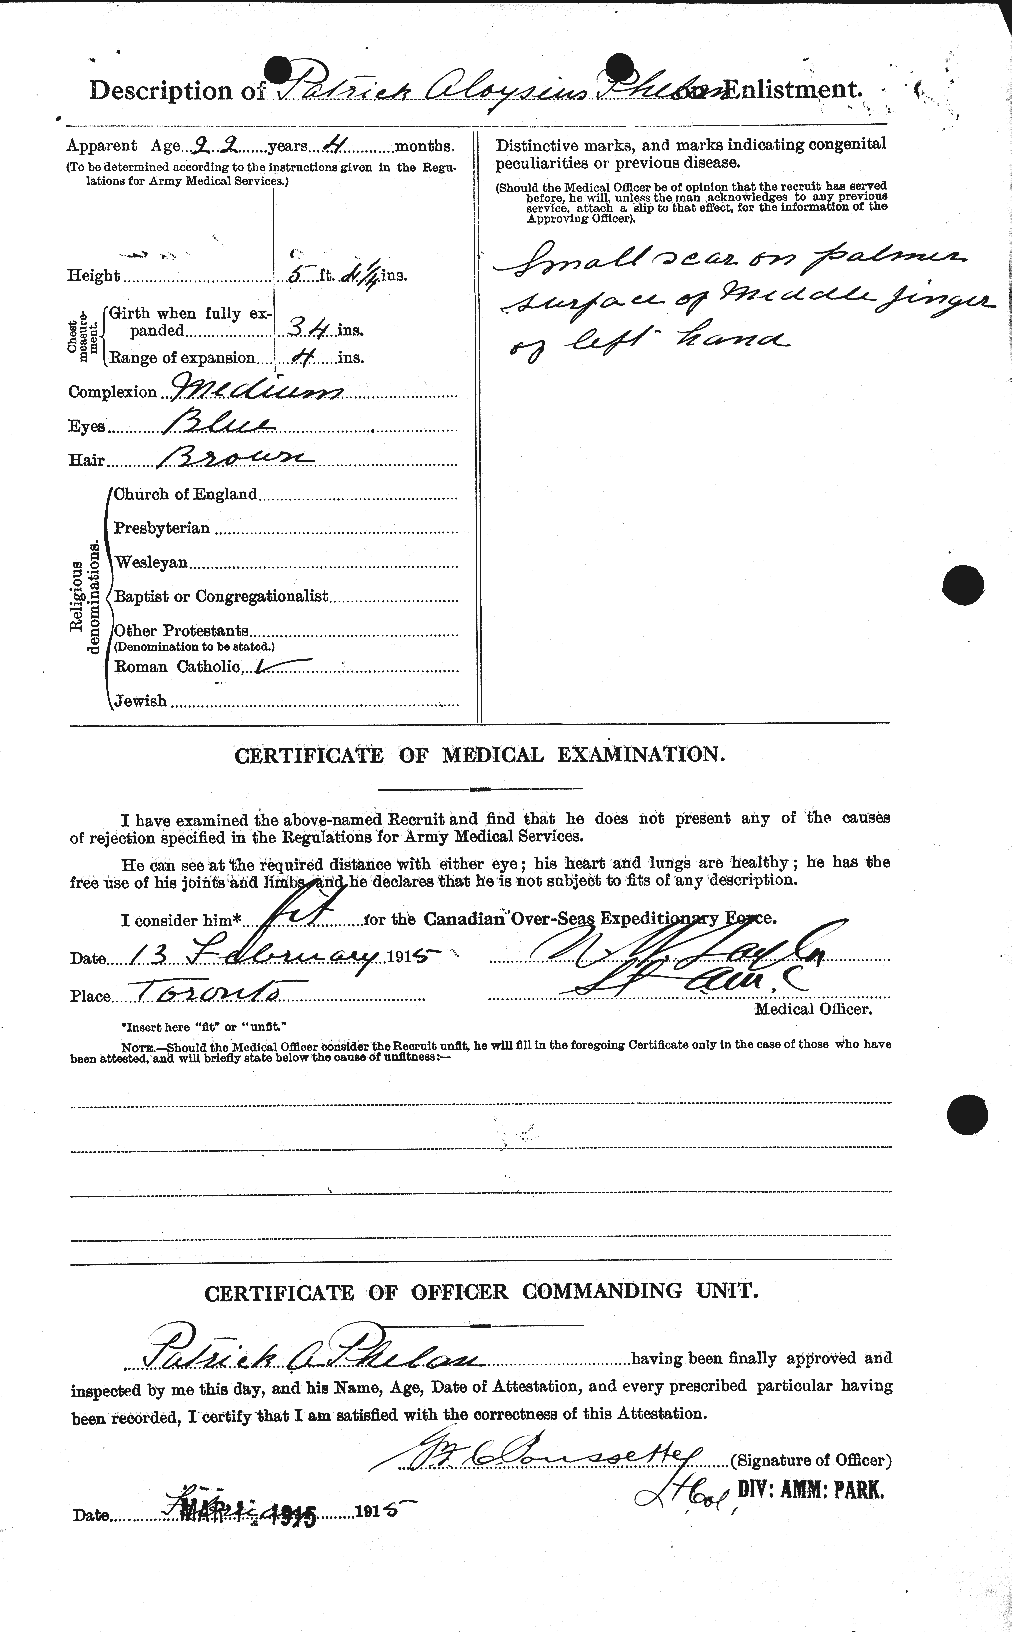 Dossiers du Personnel de la Première Guerre mondiale - CEC 576963b